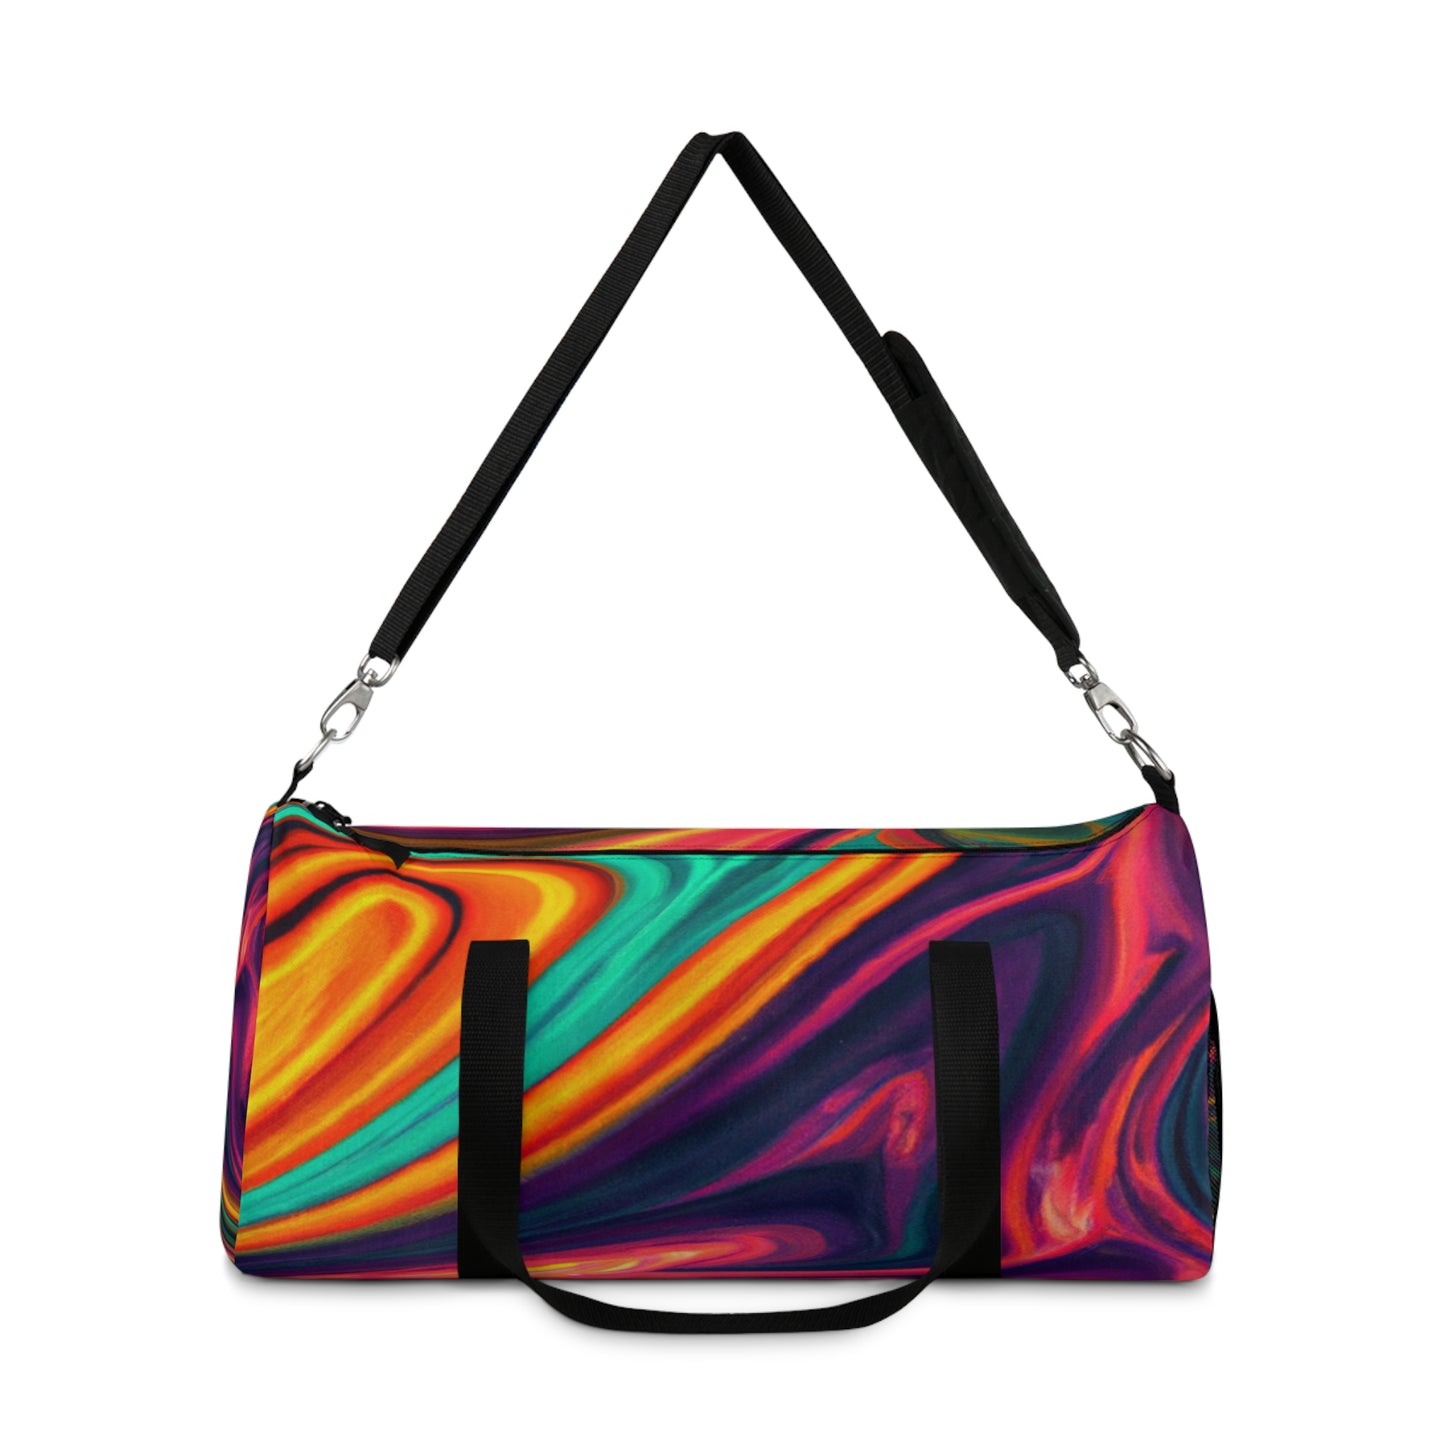 Finnley Fashions - Psychedelic Duffel Bag